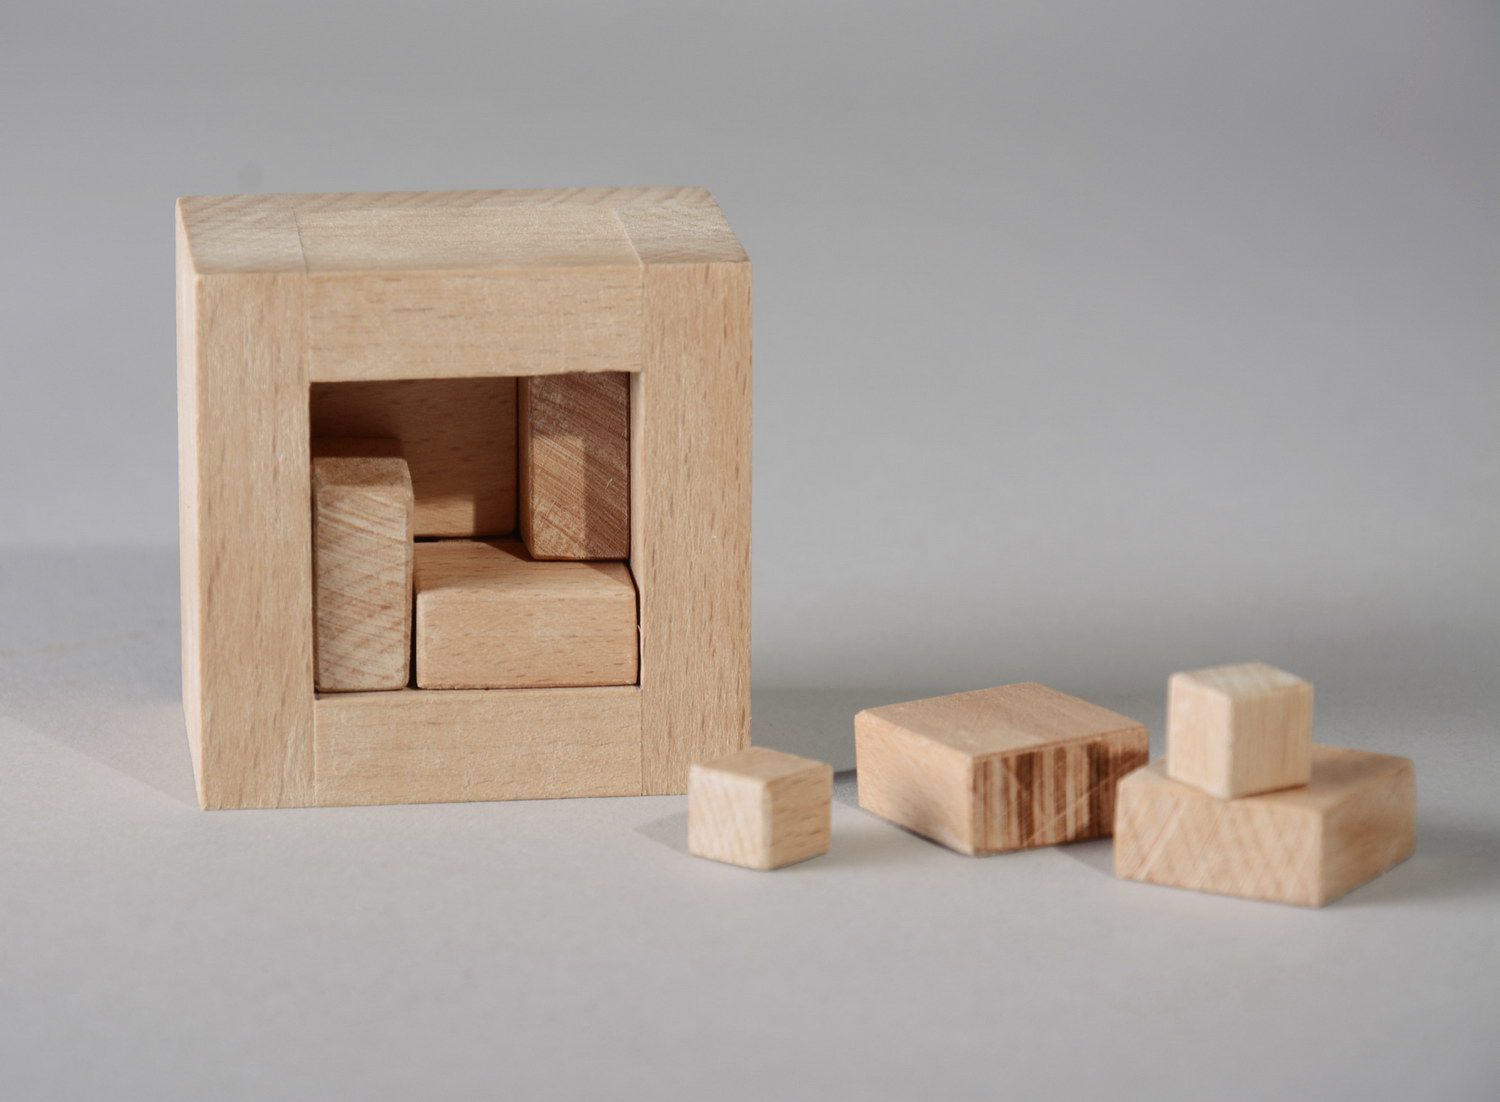 Rompicapo in legno di Singmaster fatto a mano giocattolo di legno idea regalo foto 2